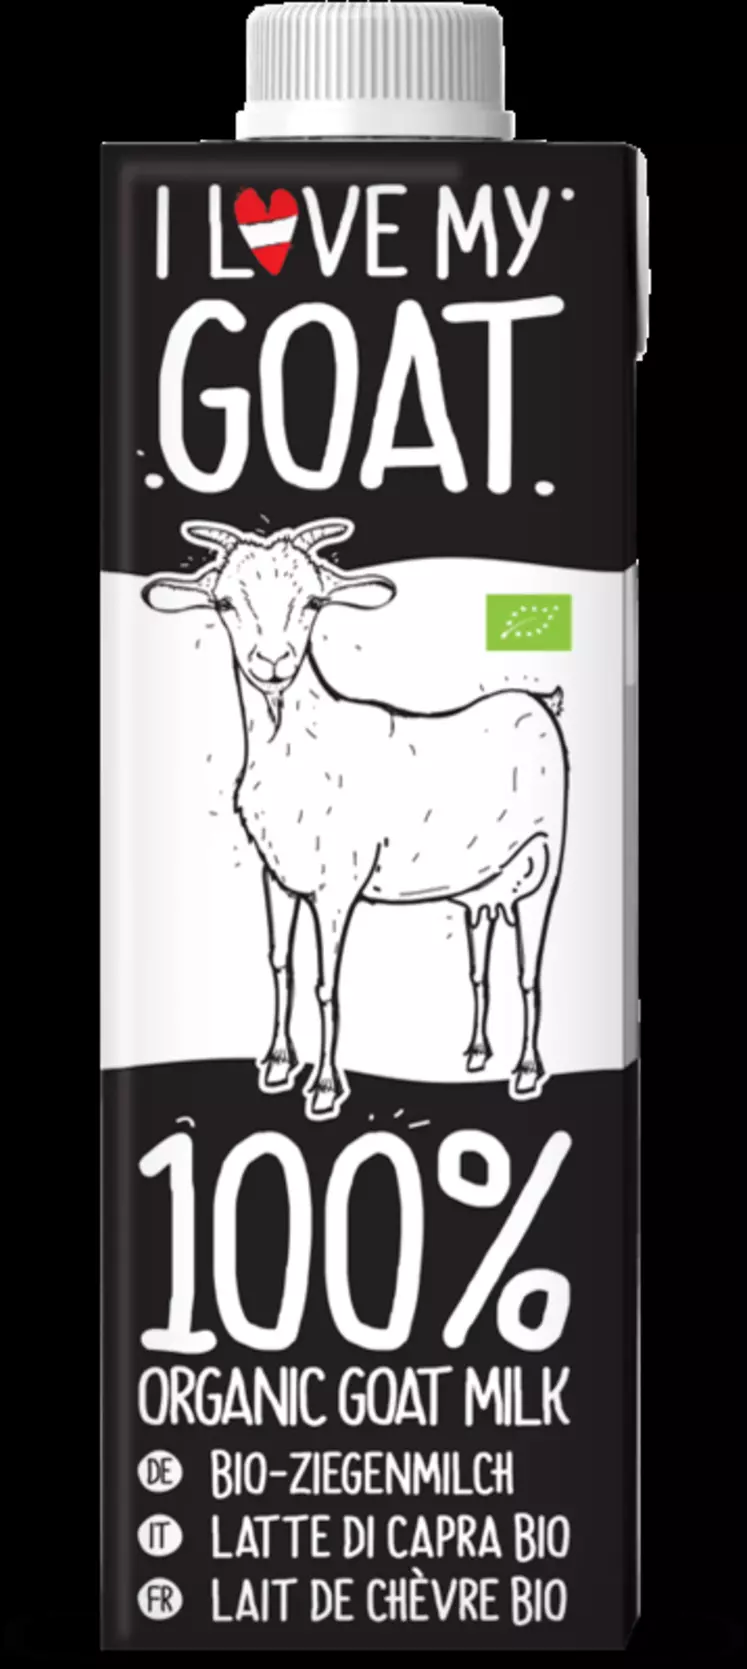 L’autrichien Leeb Biomilch propose son lait de chèvre biologique I love my goat dans une brique de 75 cl sympa avec son design noir et blanc. © DR